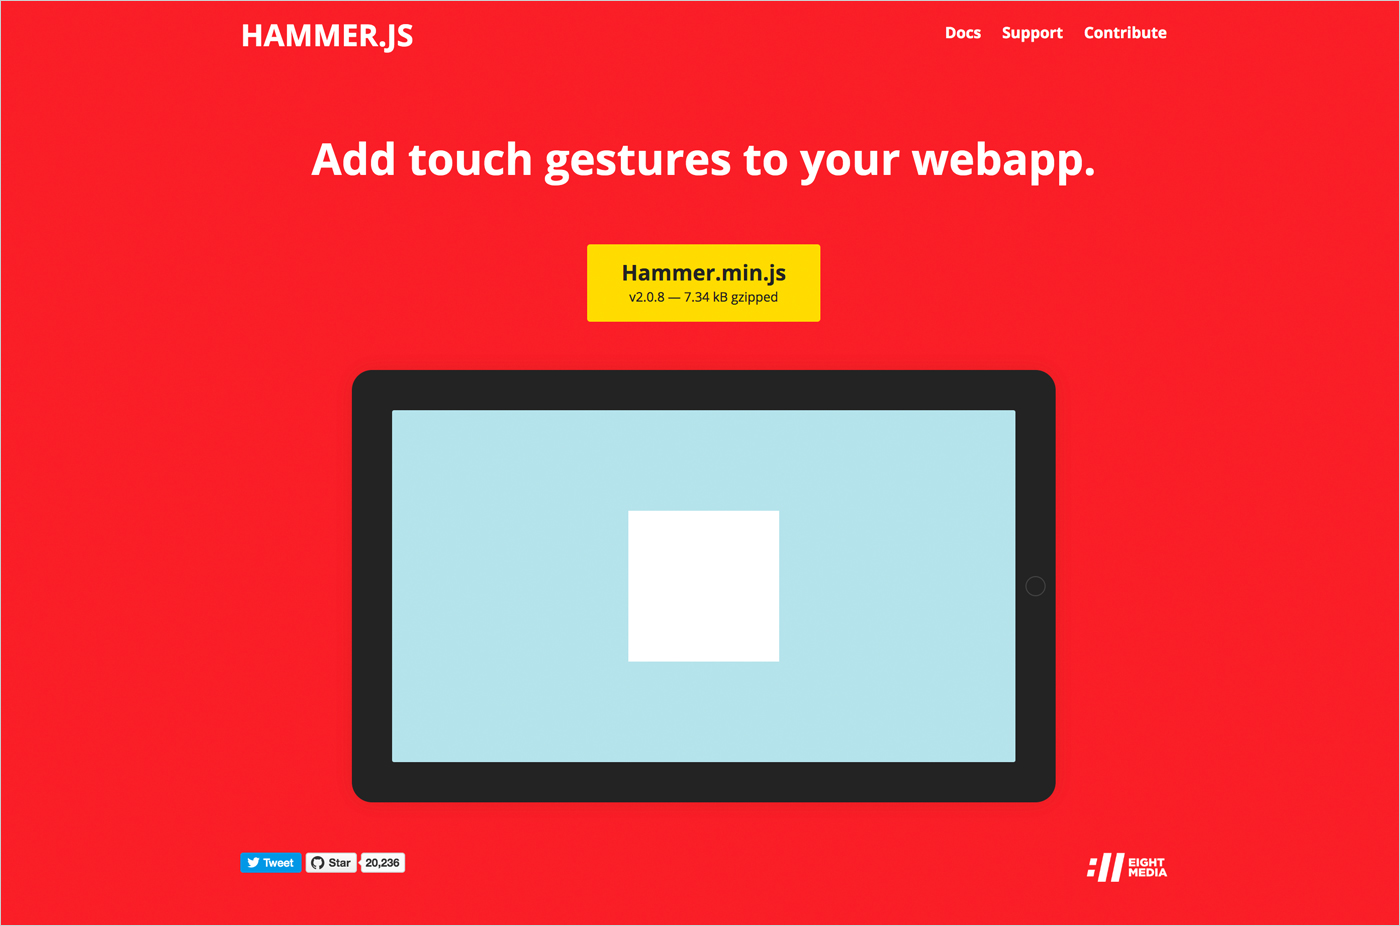 HAMMER.JSウェブサイトの画面キャプチャ画像